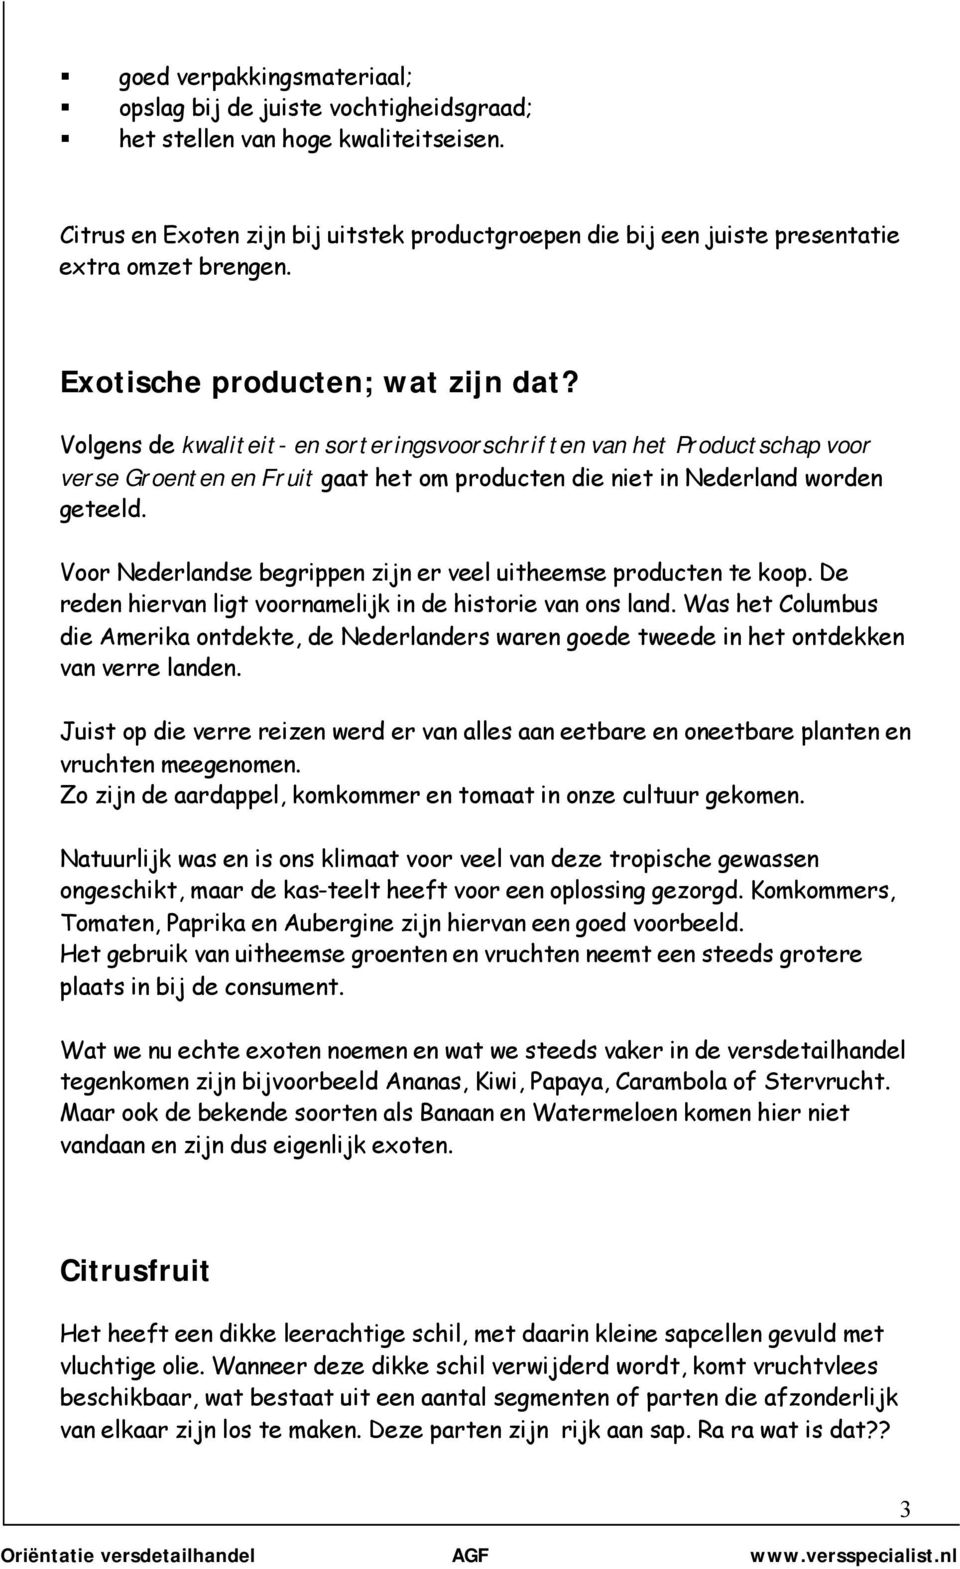 Volgens de kwaliteit- en sorteringsvoorschriften van het Productschap voor verse Groenten en Fruit gaat het om producten die niet in Nederland worden geteeld.